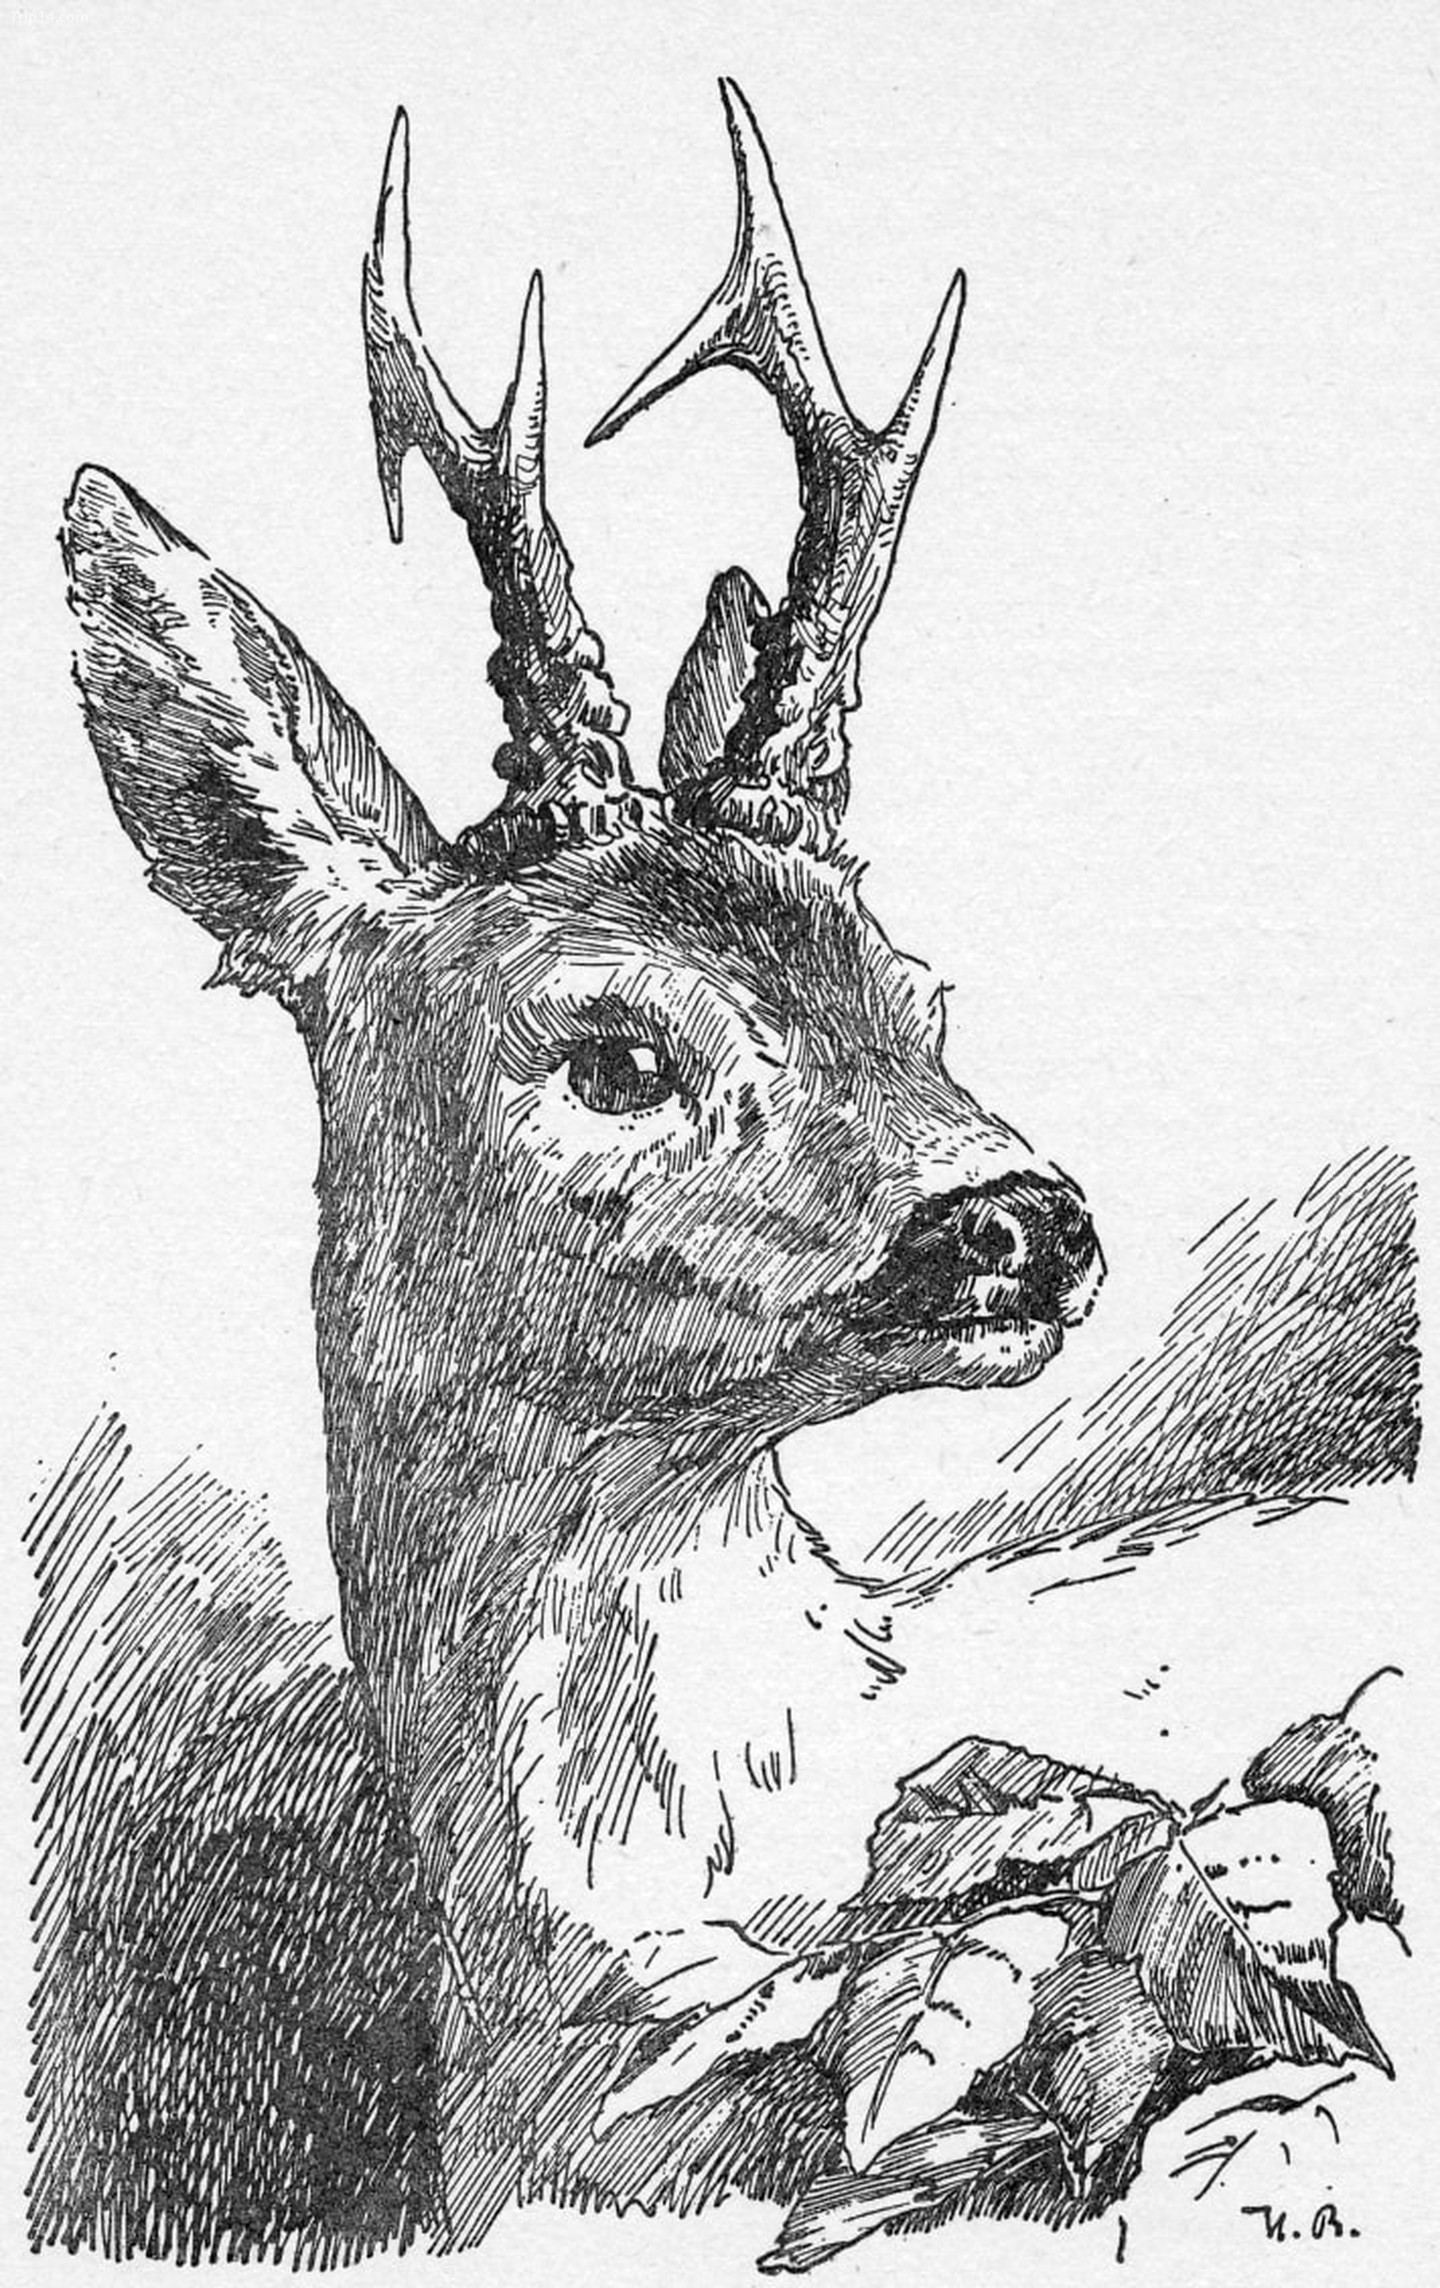  Hình minh họa năm 1940 của Hans Bertle về Bambi   |   